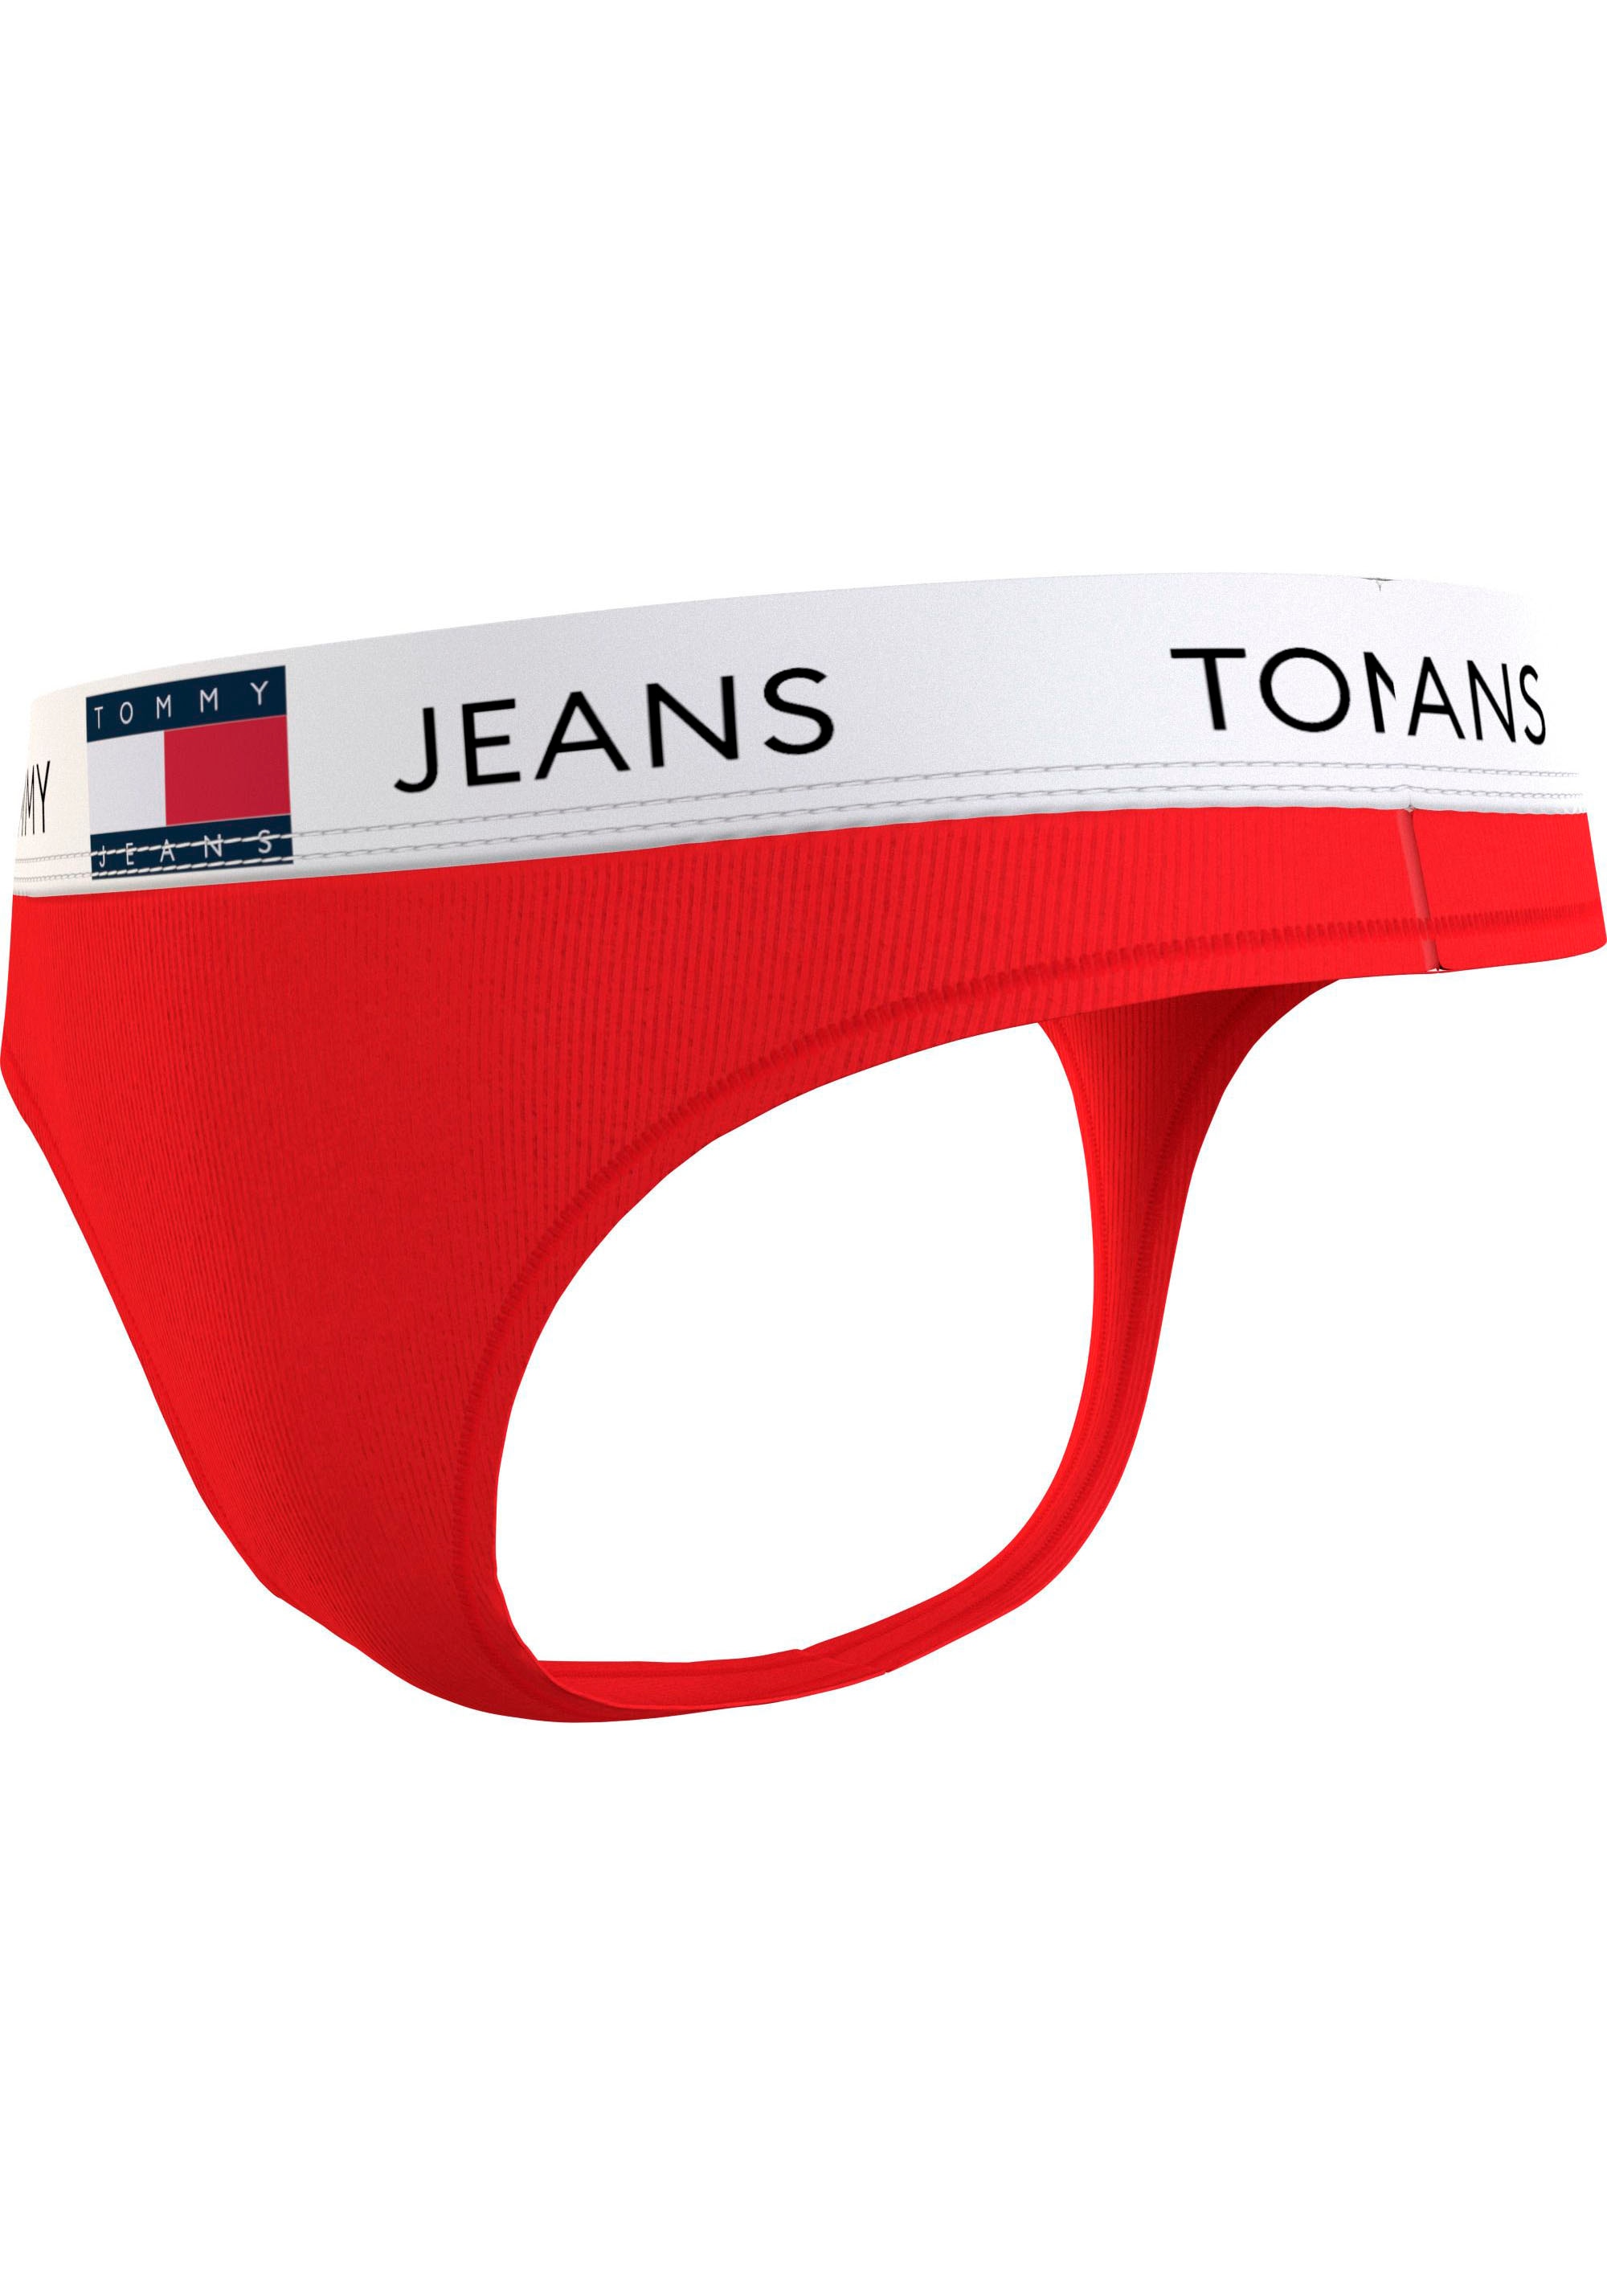 mit T-String Tommy SIZES)«, Online im elastischem OTTO (EXT Bund Underwear Hilfiger Shop »THONG